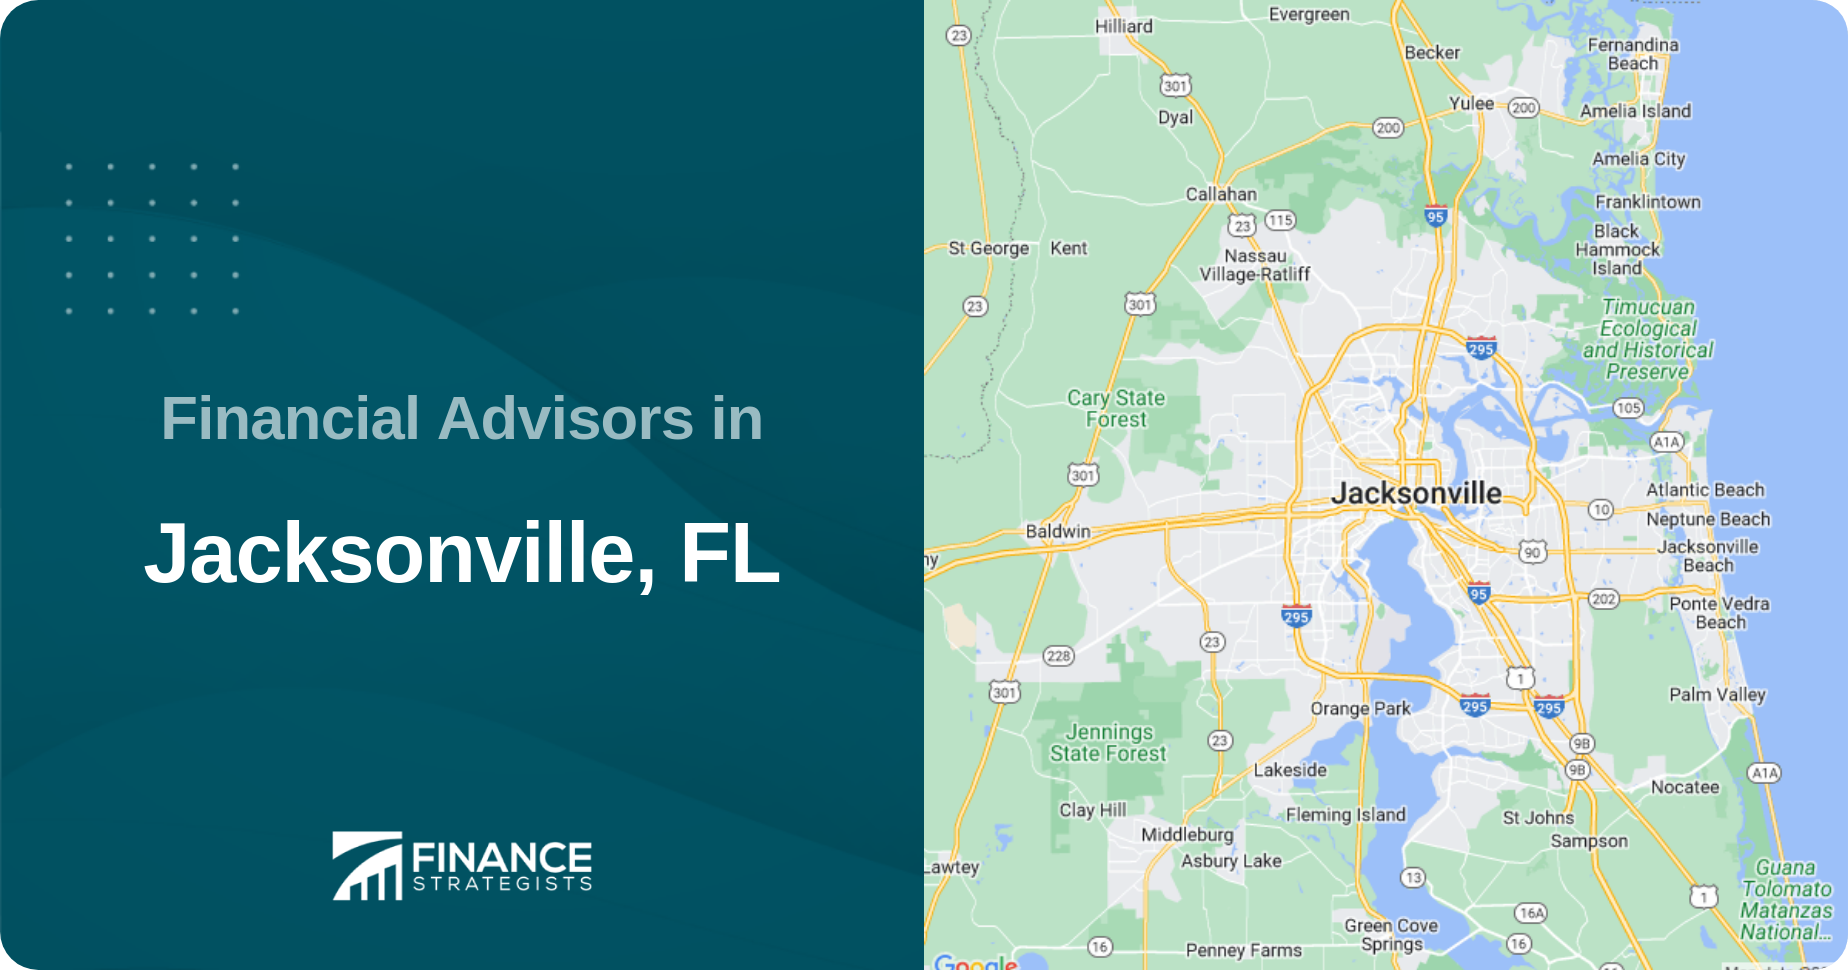 Financial Advisors in Jacksonville, FL